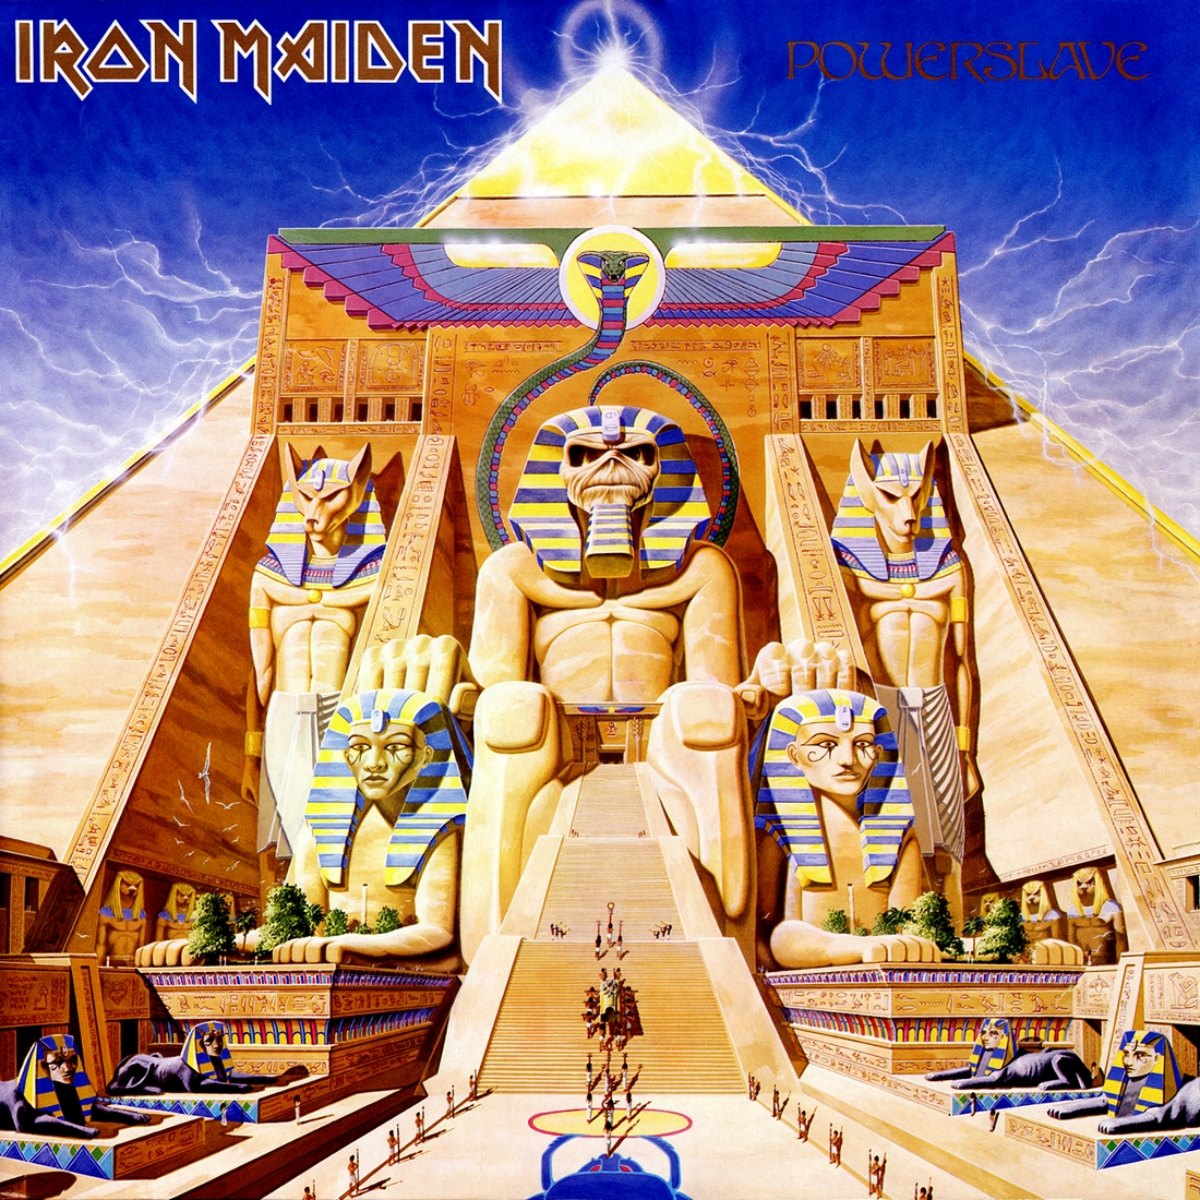 Capa do álbum 'Powerslave' do Iron Maiden